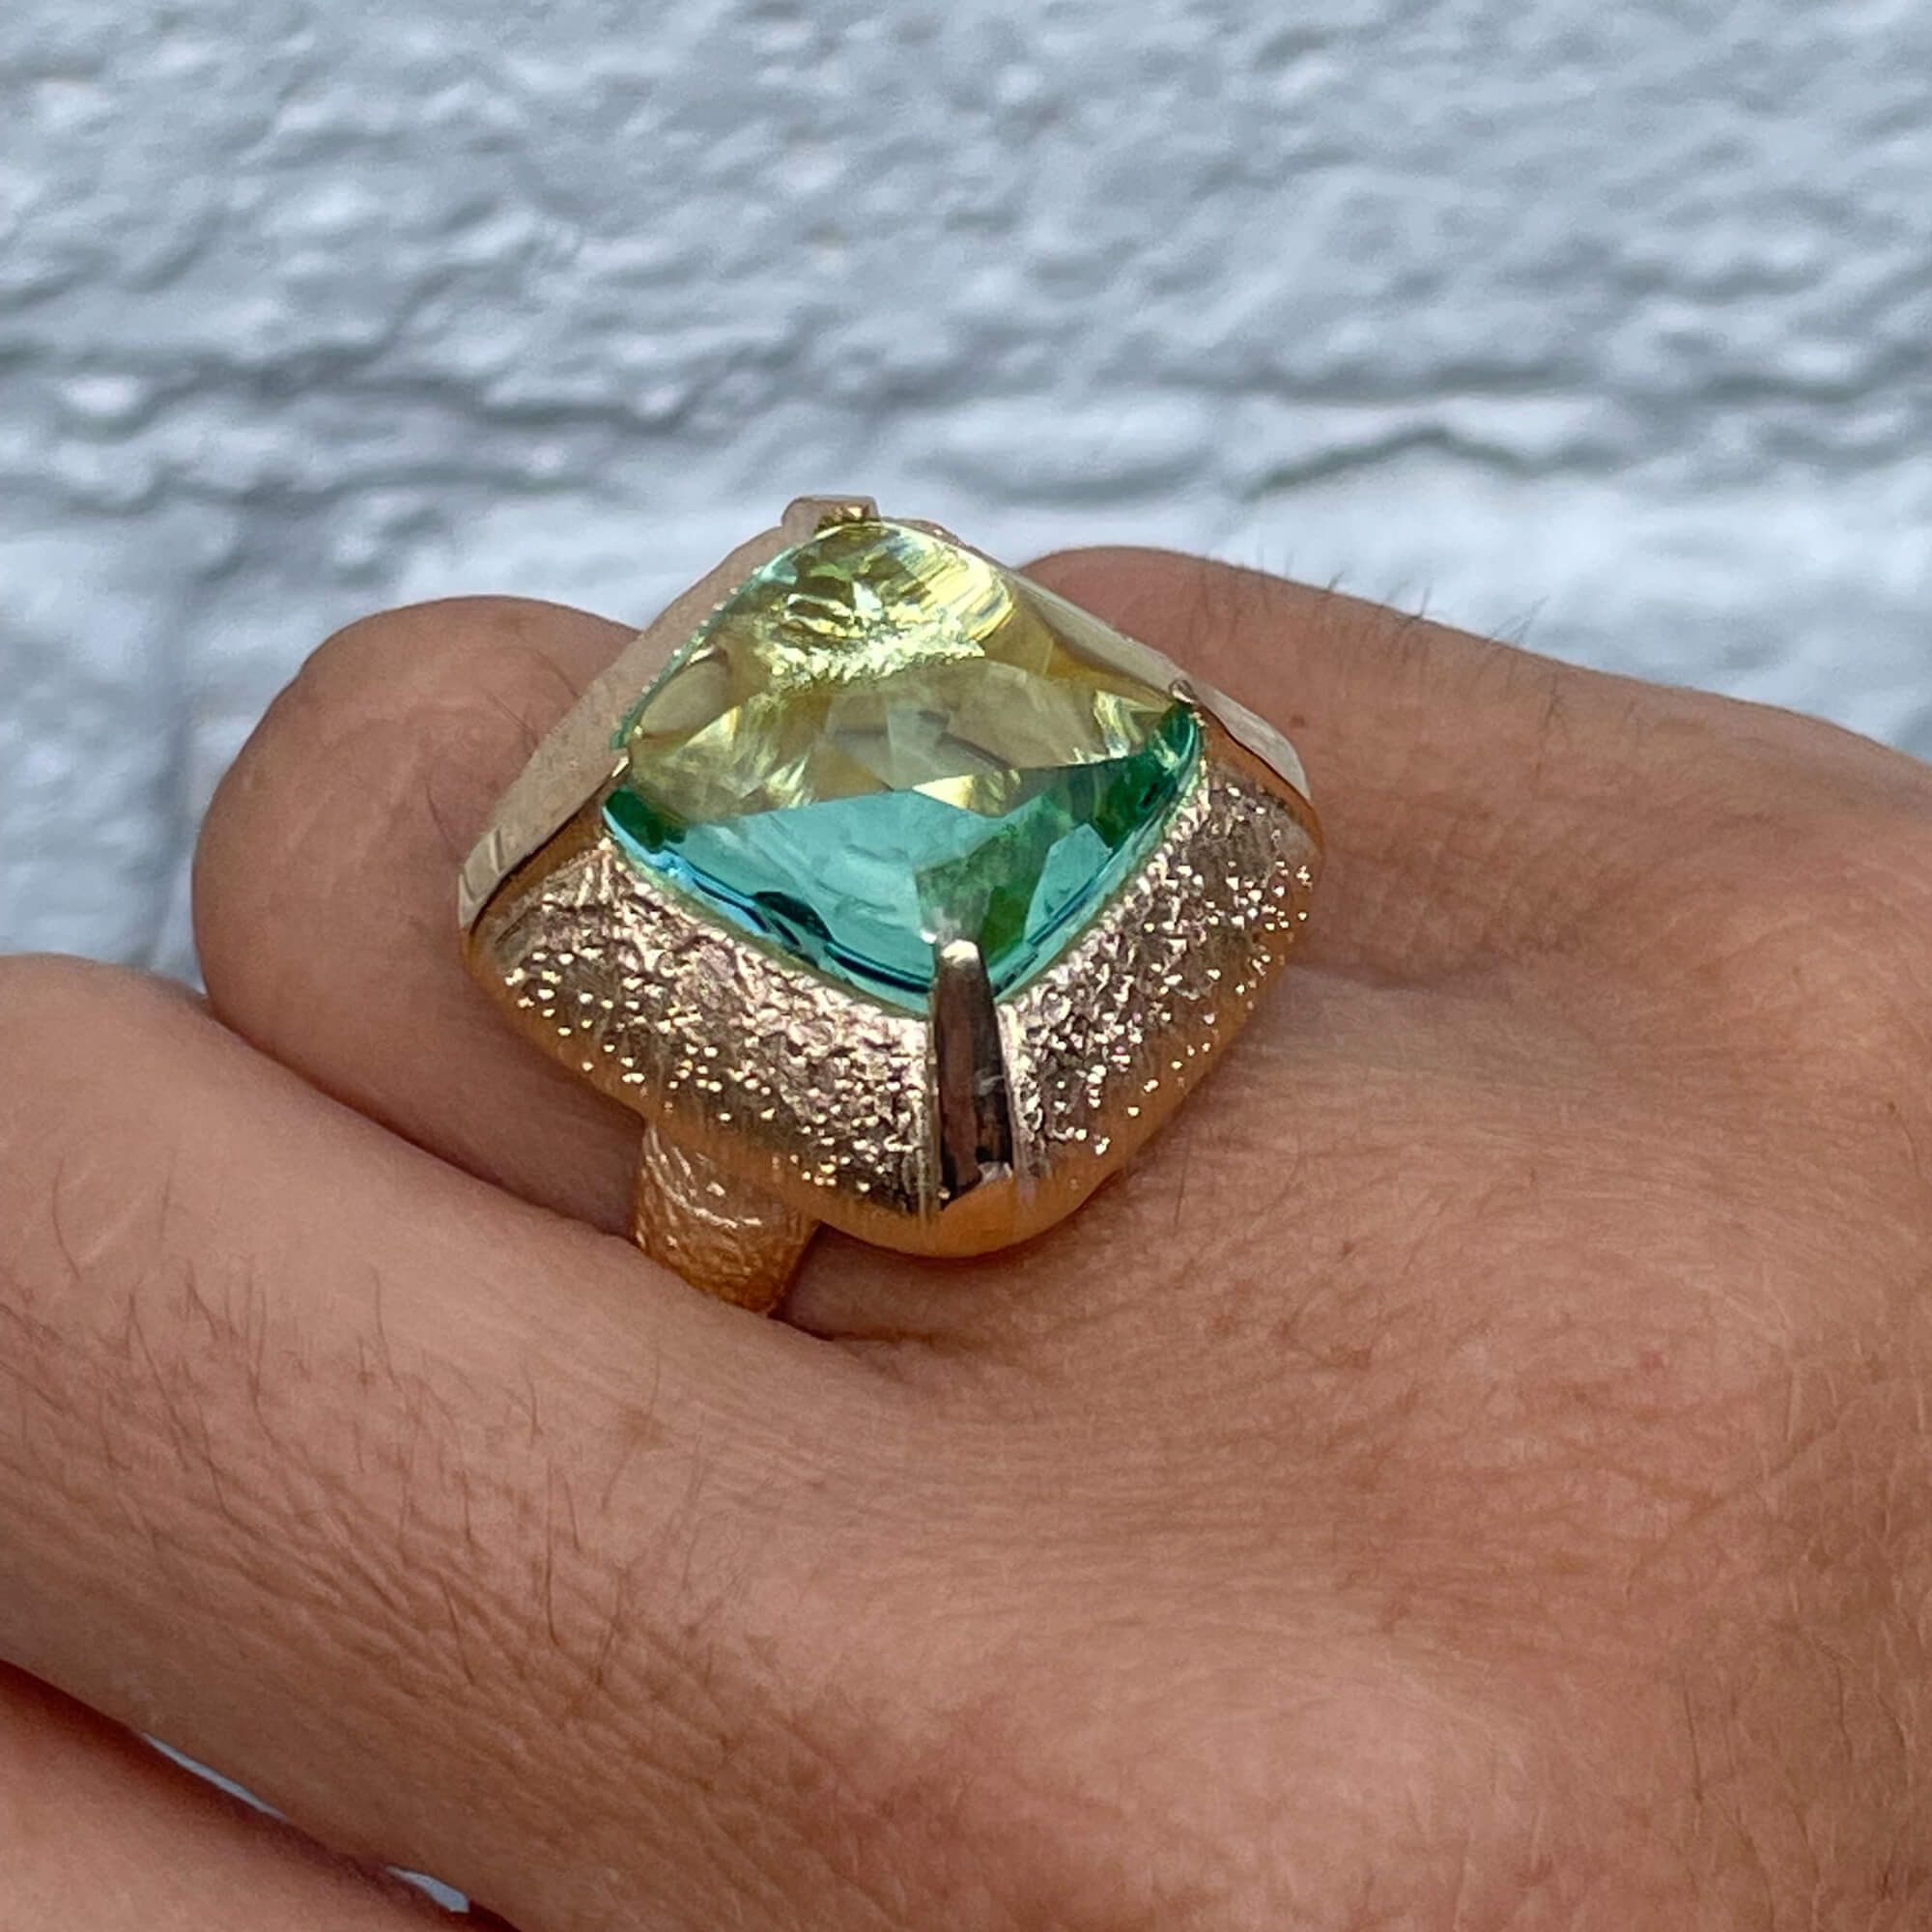 Vergulde vierkantvormige ring met een groene steen